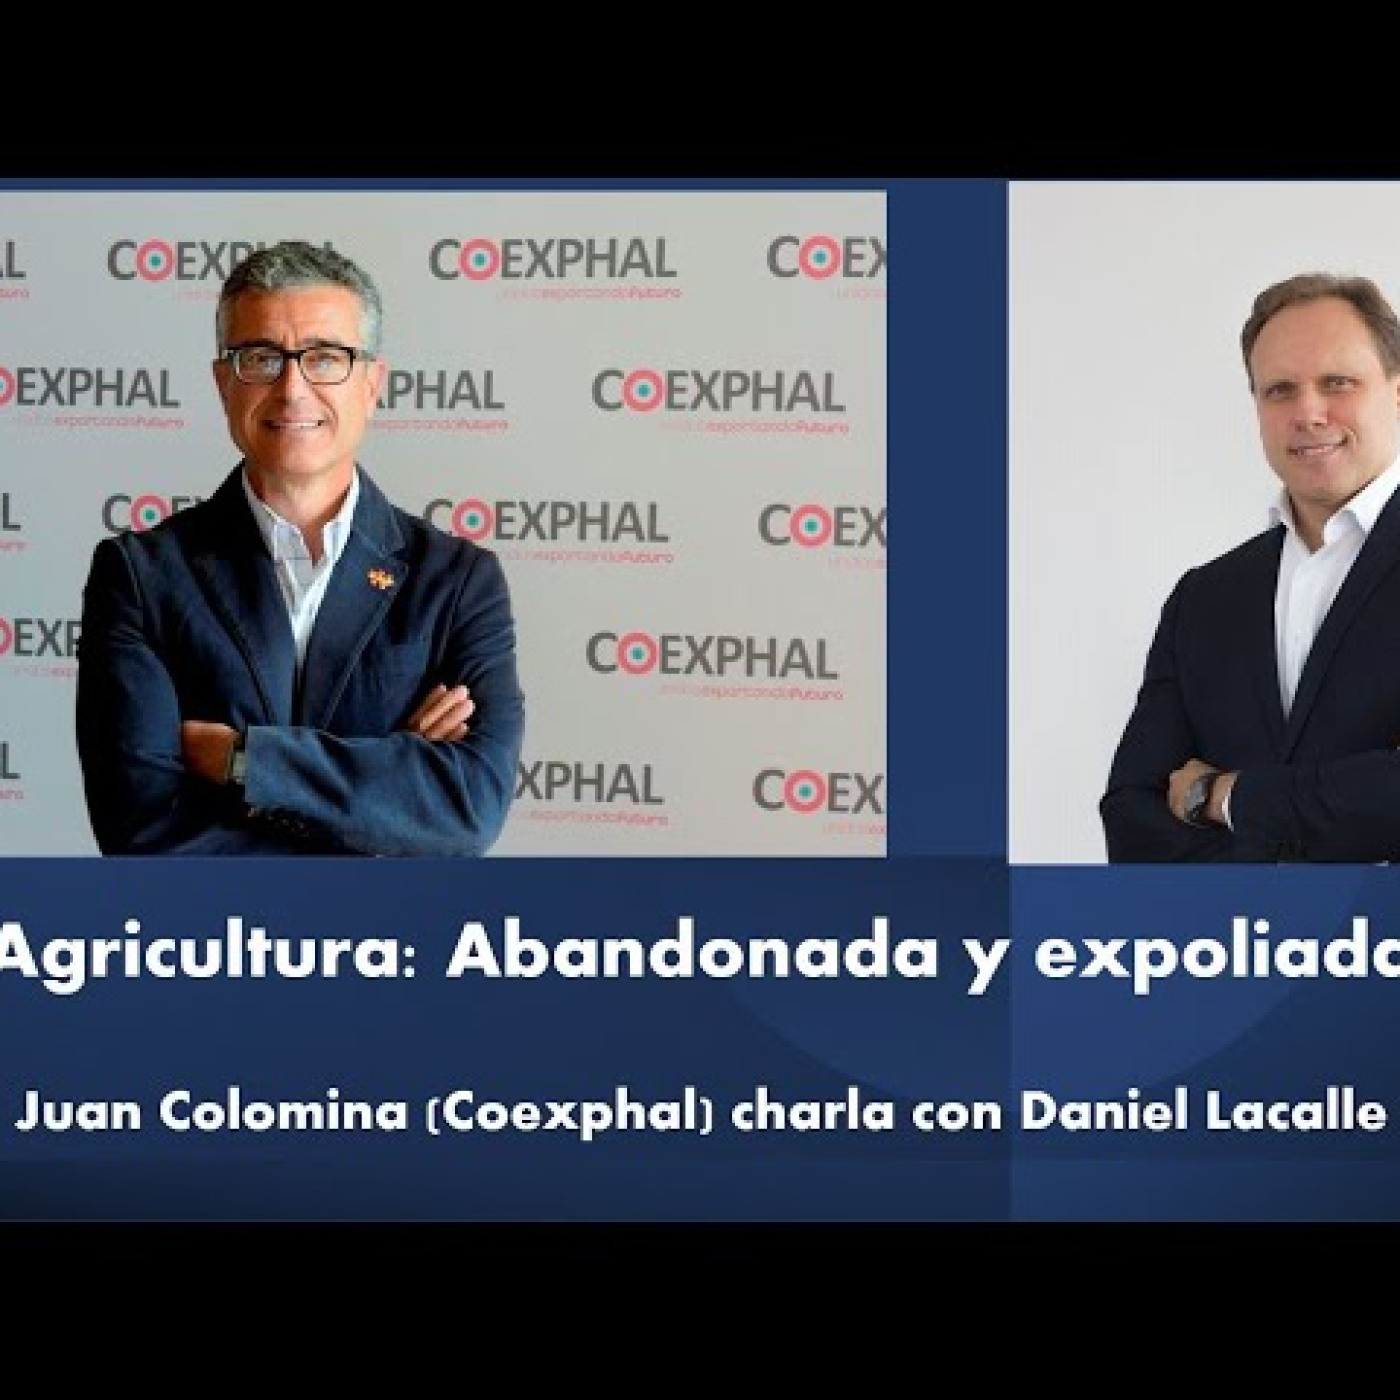 Audios Daniel Lacalle. Extra Patronos | Charla con Juan Colomina: Agricultura Abandonada y expoliada | Invernaderos - Episodio exclusivo para mecenas